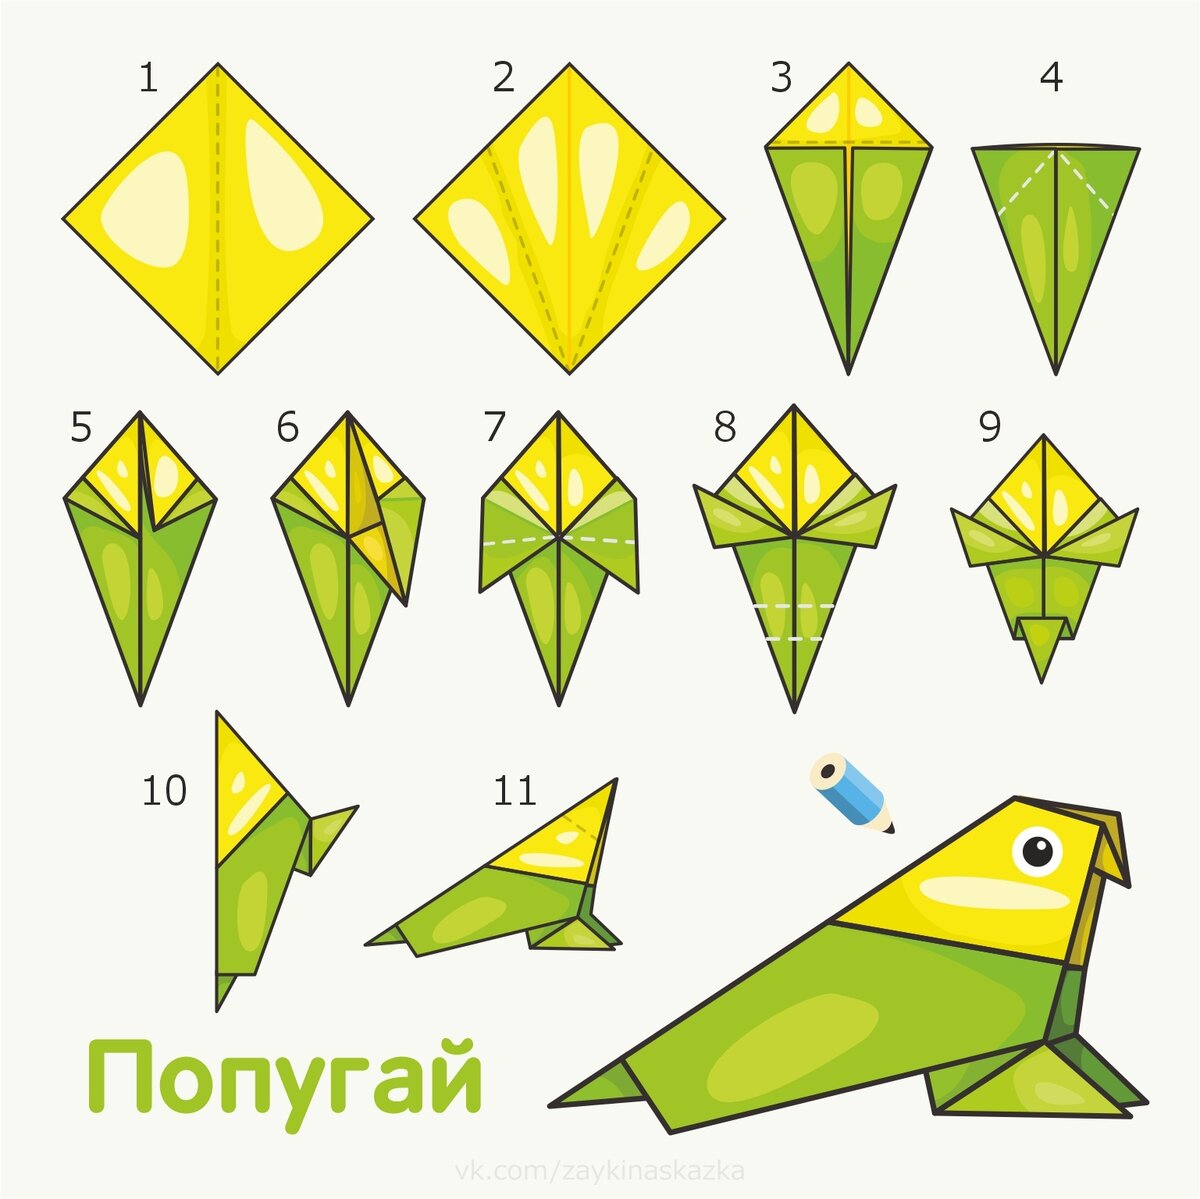 ᐉ как сделать попугая из бумаги поэтапно. оригами попугай. мастер-класс. необходимые материалы и инструменты ✅ igrad.su